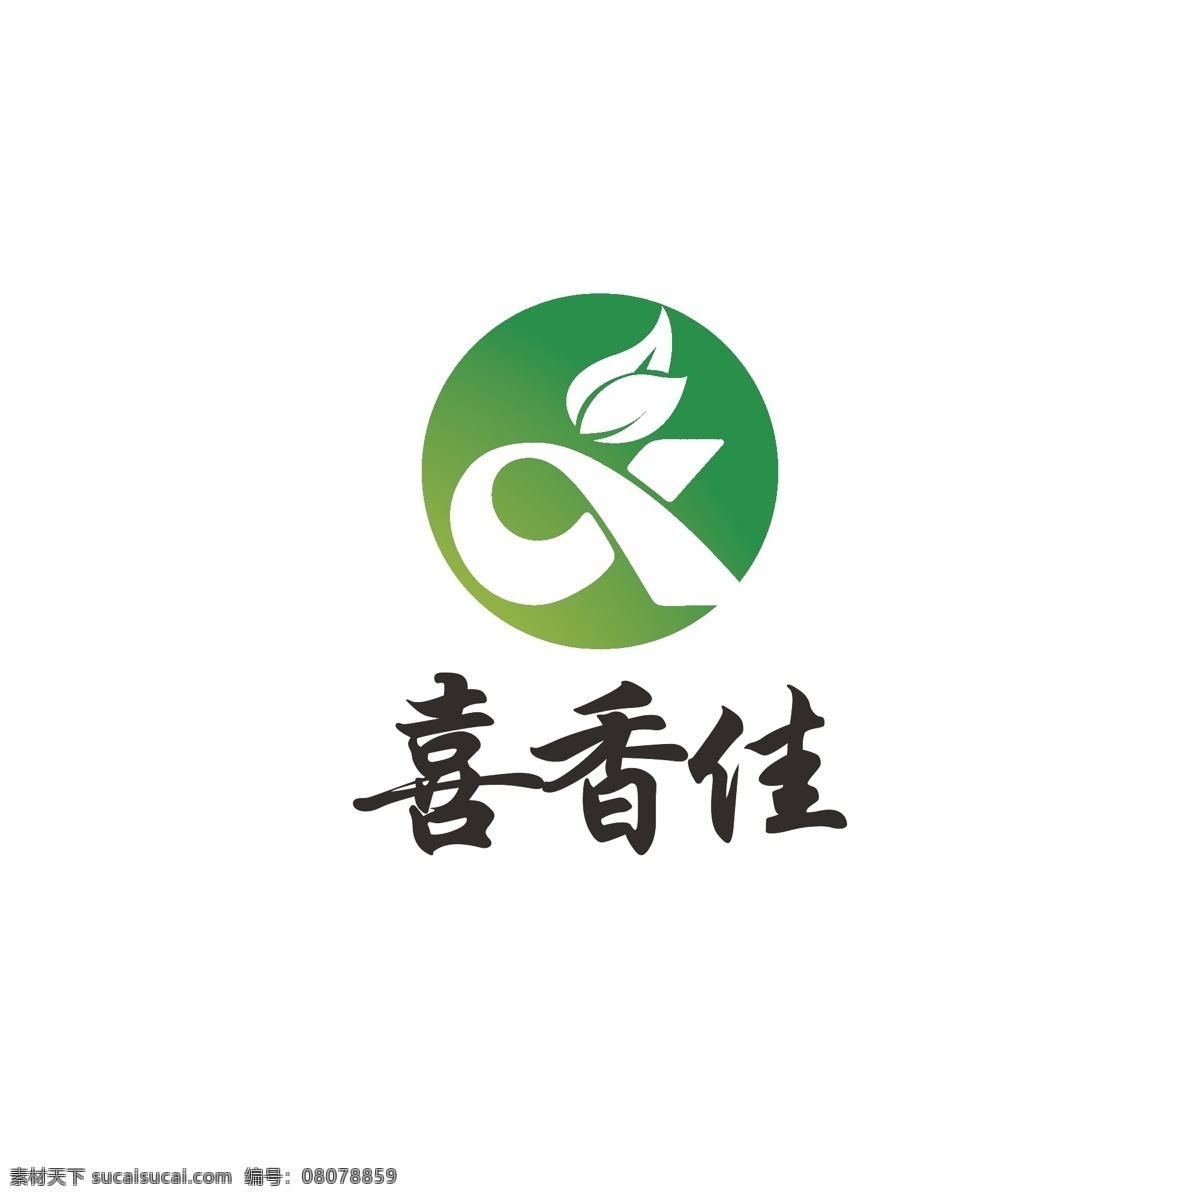 农业 产品 logo 绿色 叶子 简约 健康 字母x 生态 有机